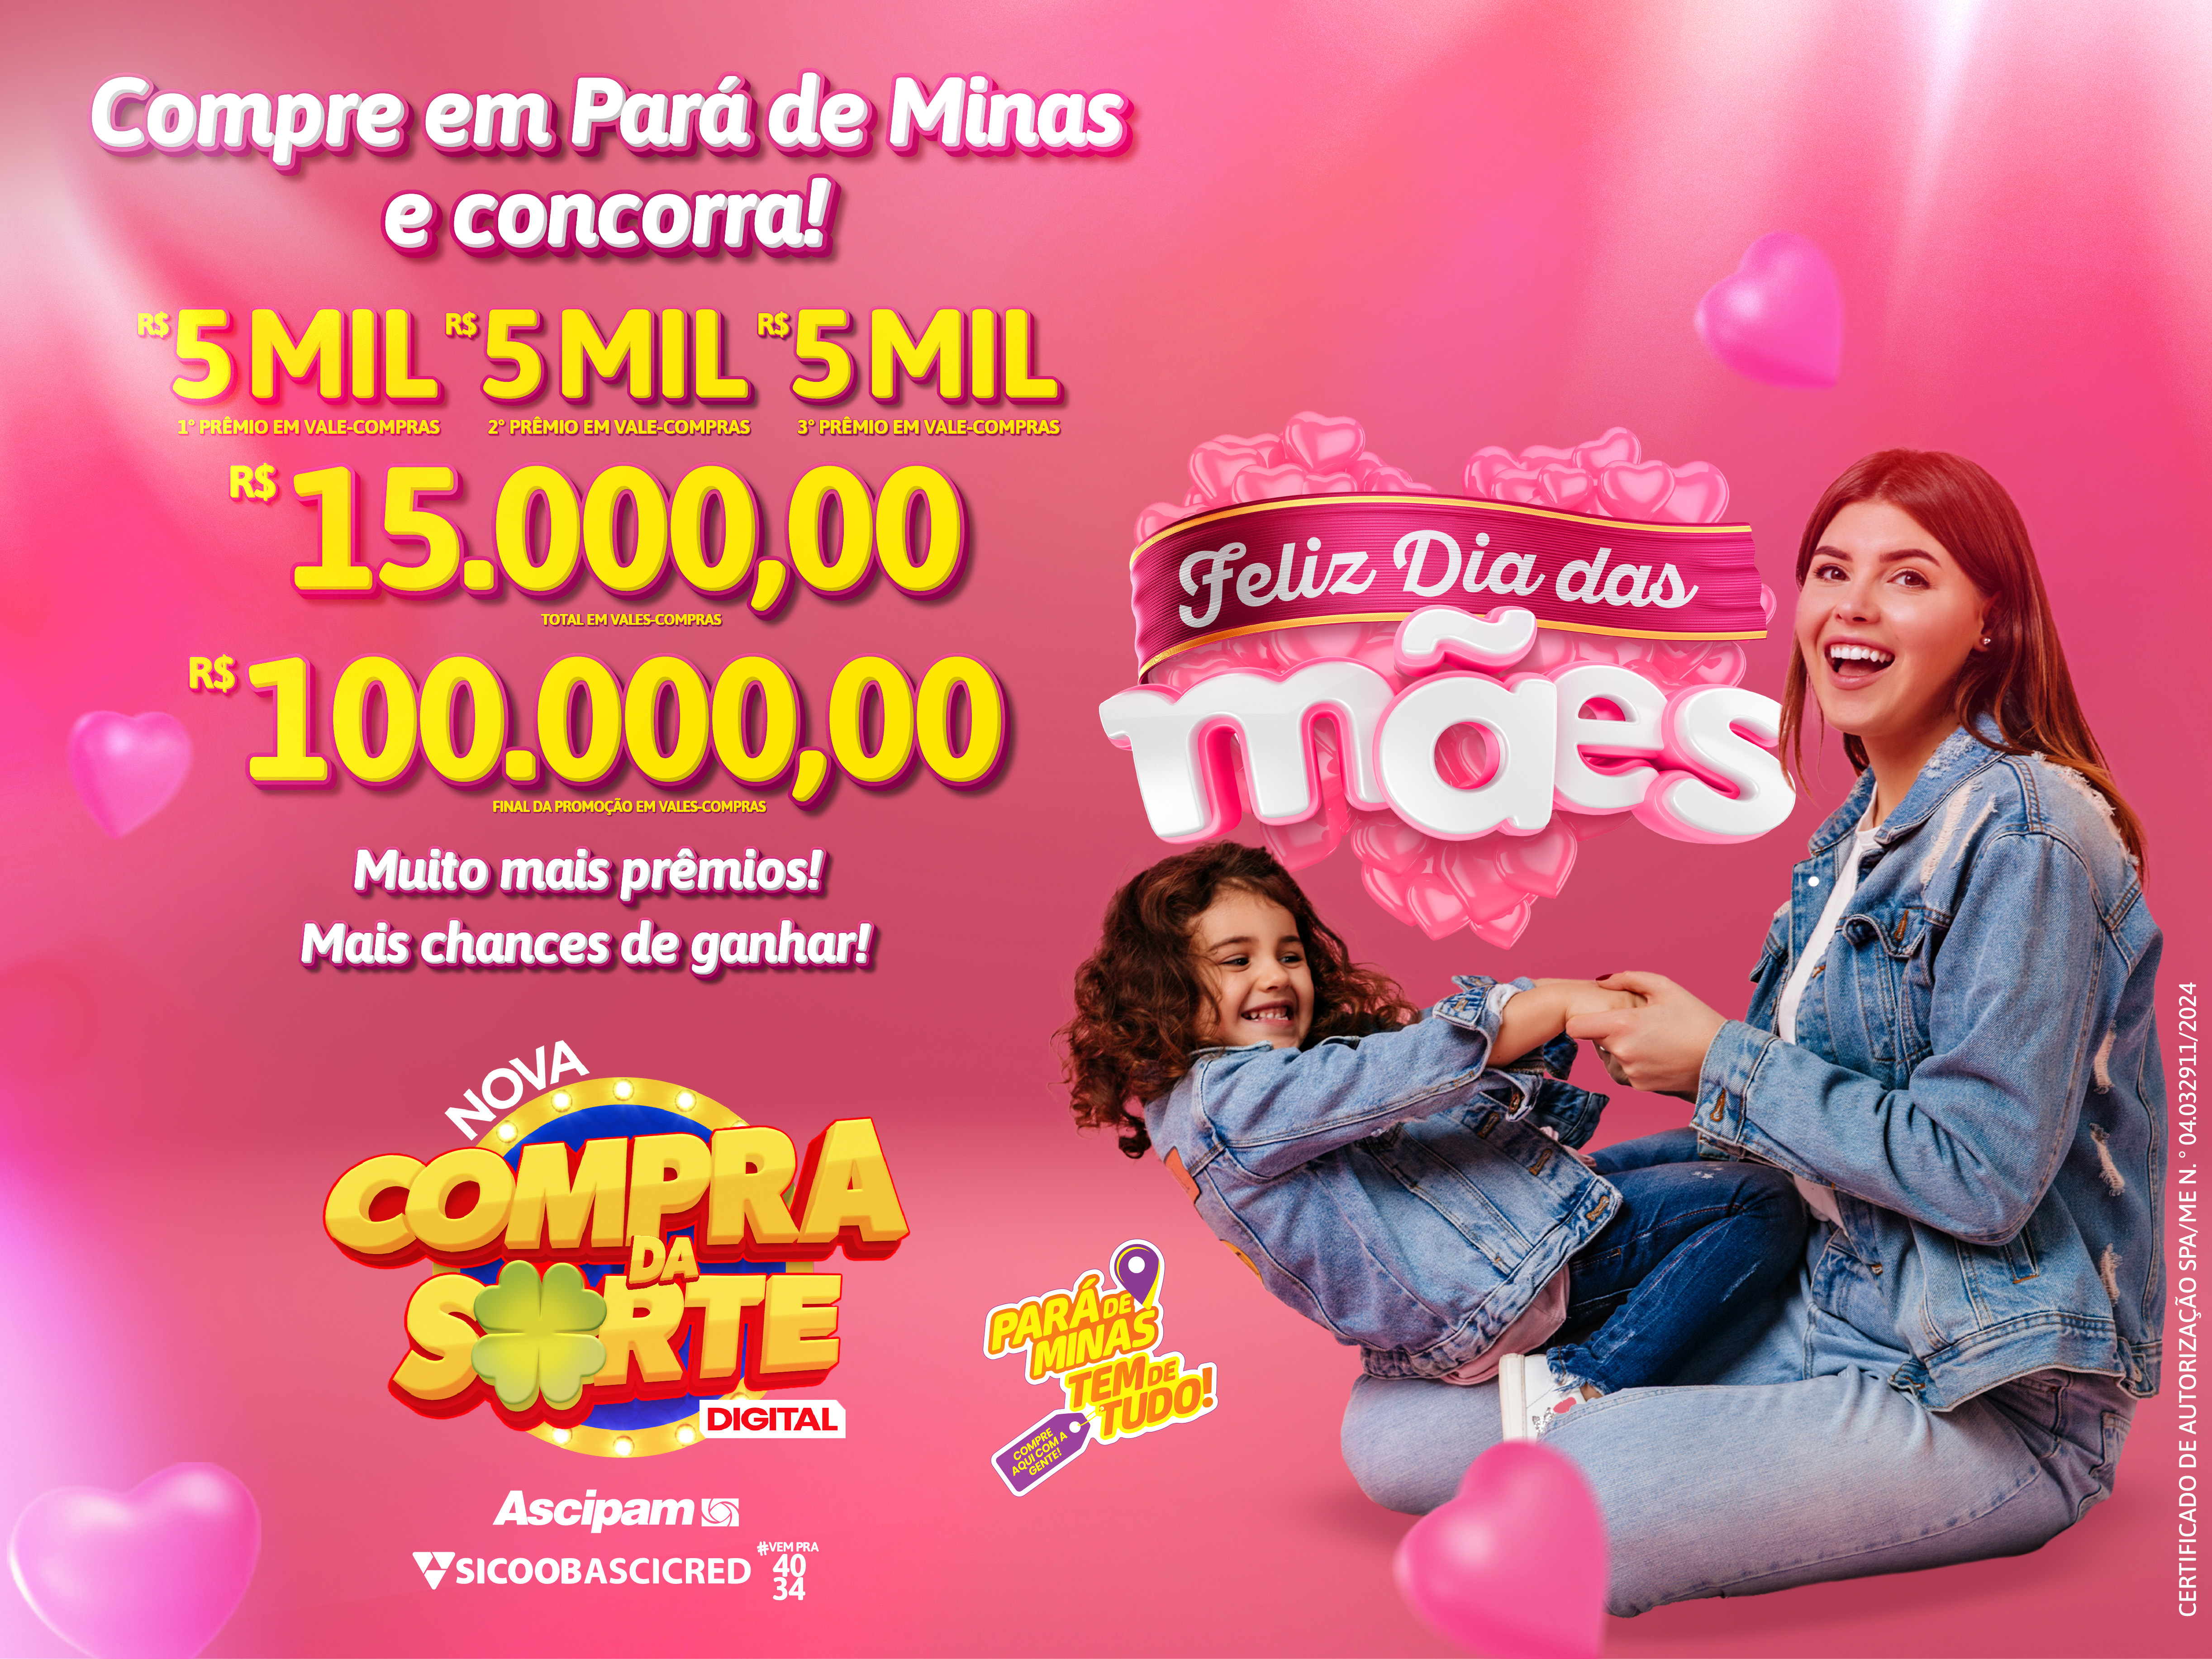 Promoção Compra da Sorte Digital agita o Dia das Mães em Pará de Minas